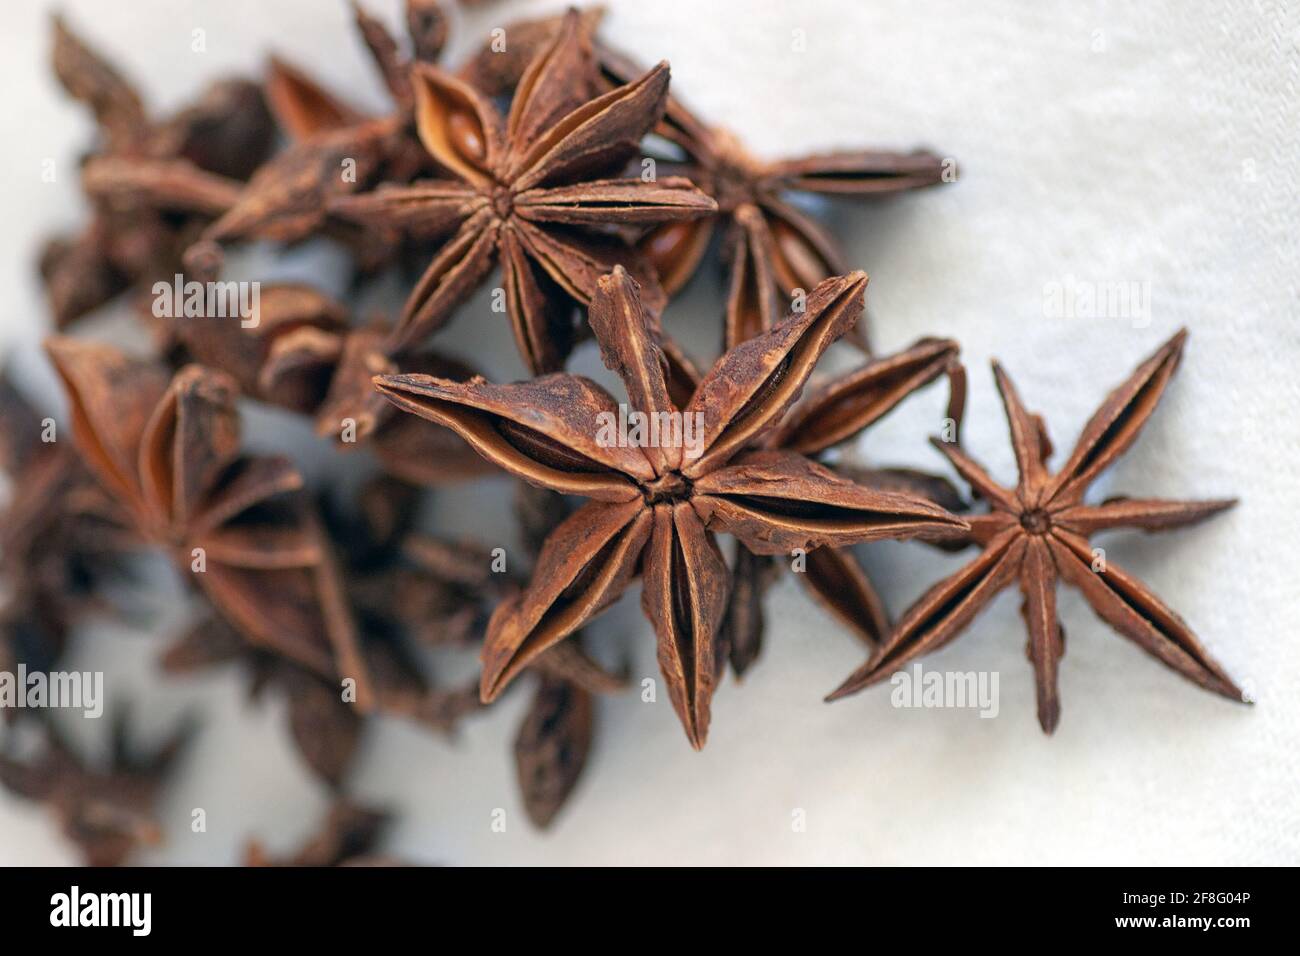 Star anise, Illicium verum Stock Photo